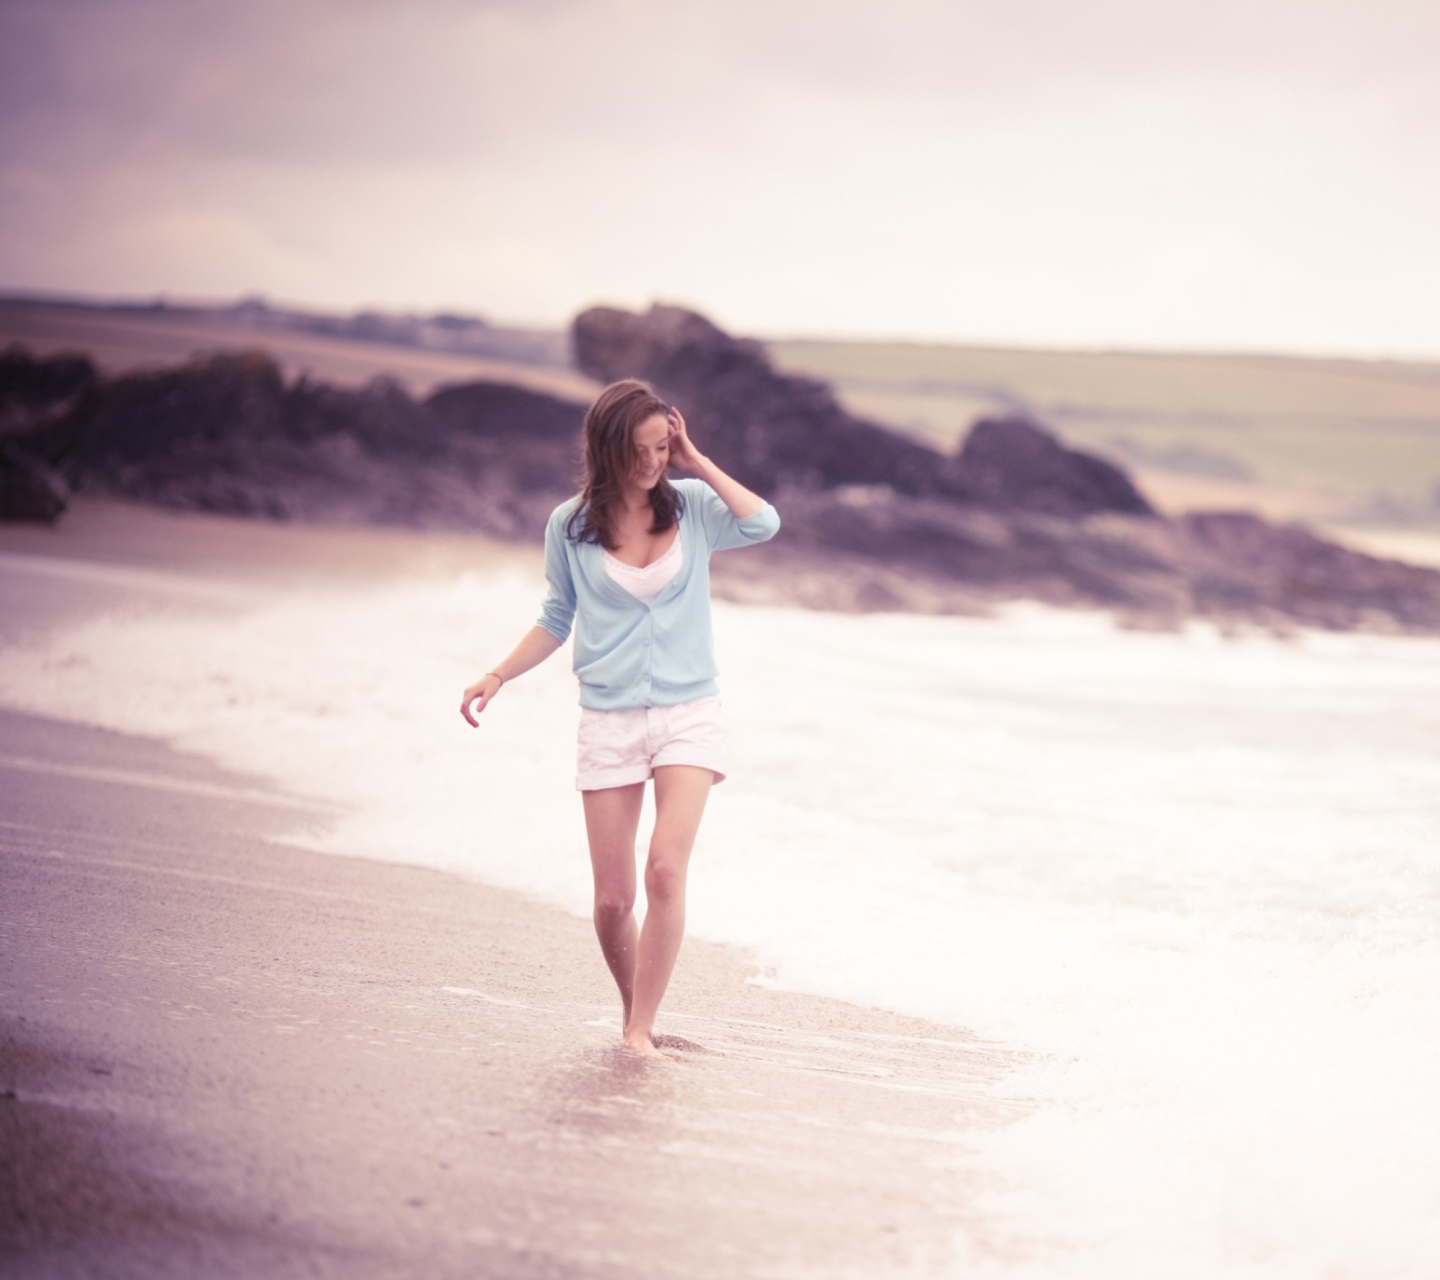 Обои Girl Walking On The Beach 1440x1280